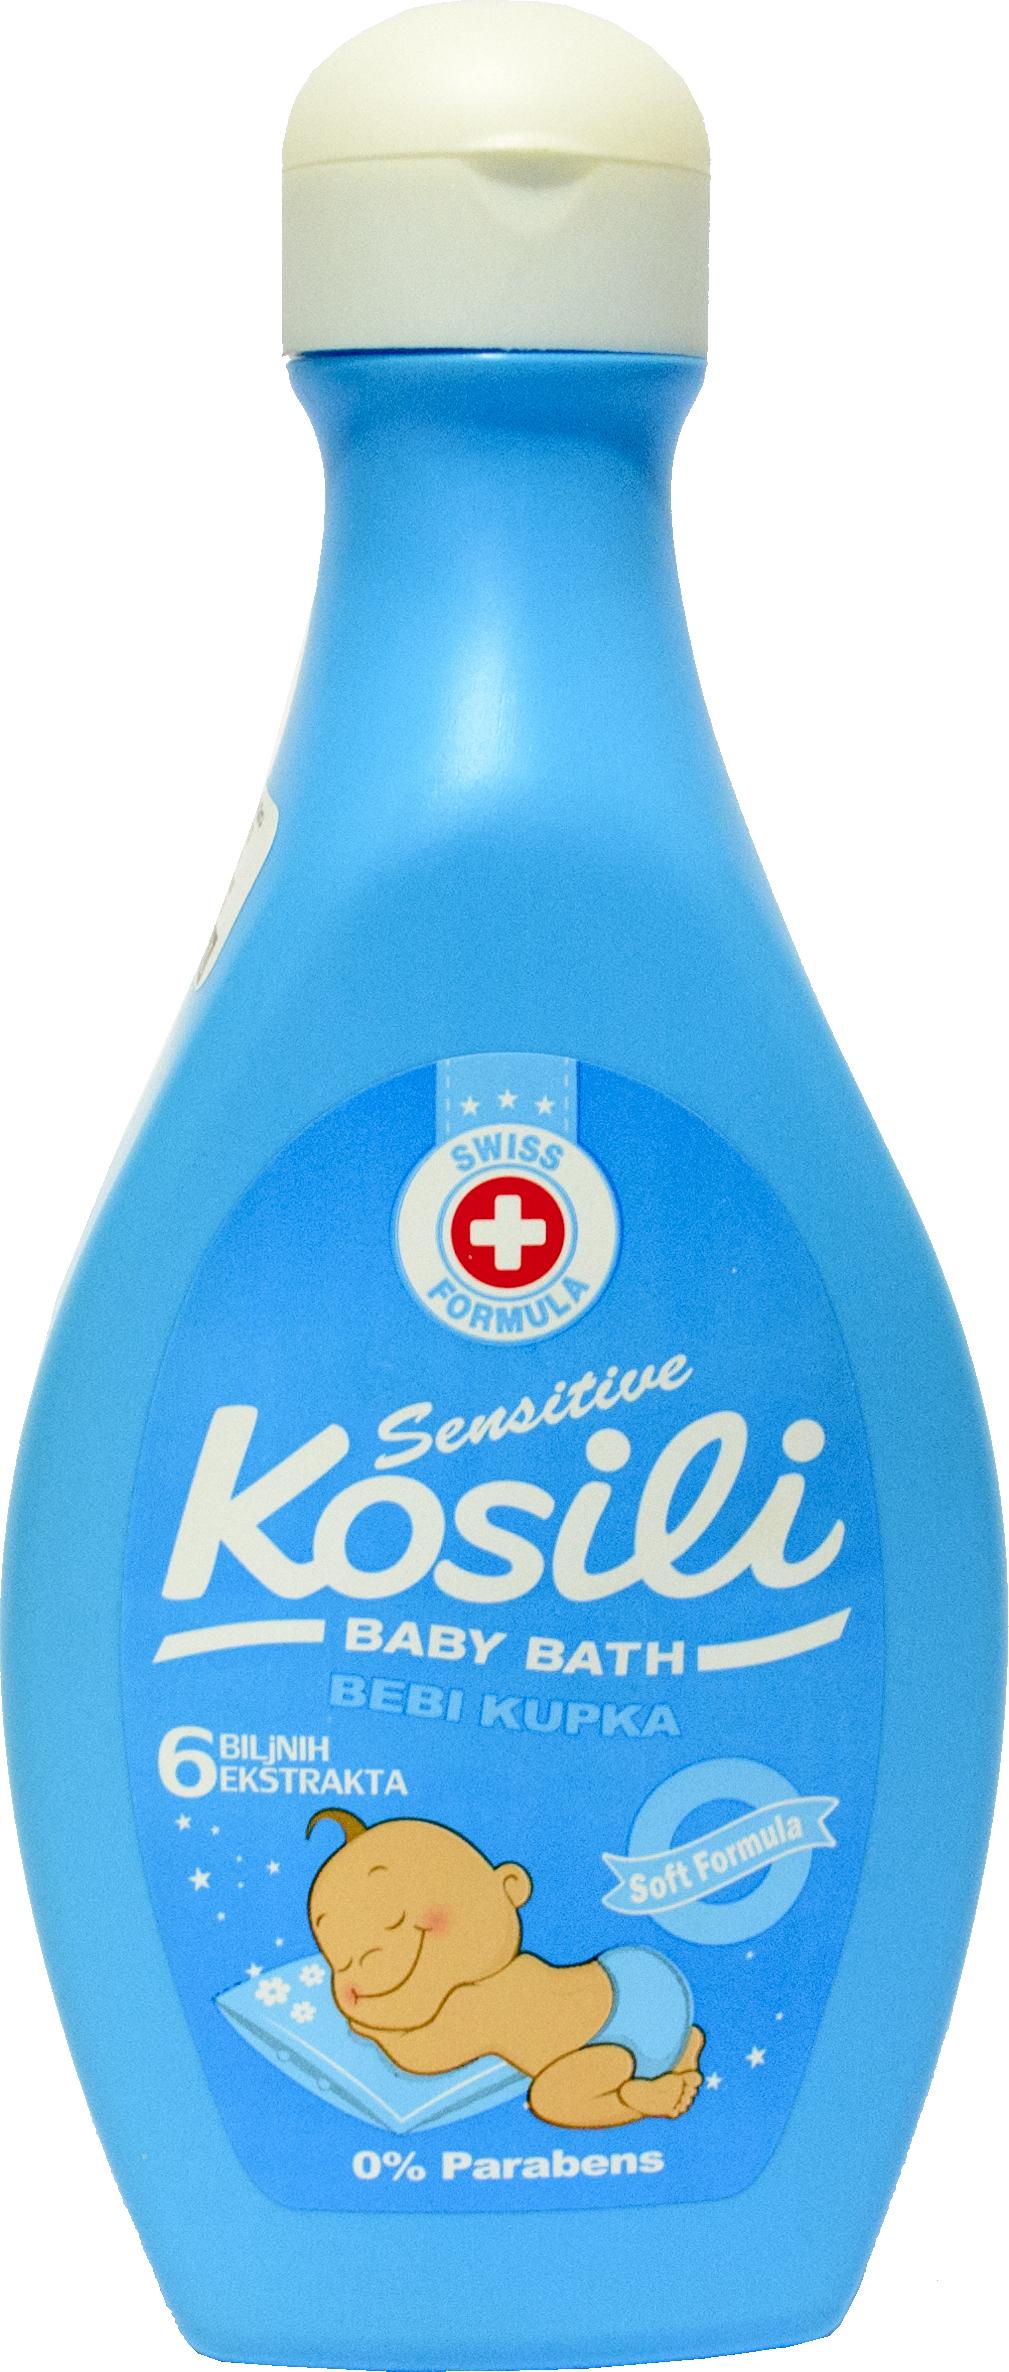 Slika za Kupka za bebe Kosili plava 400 ml